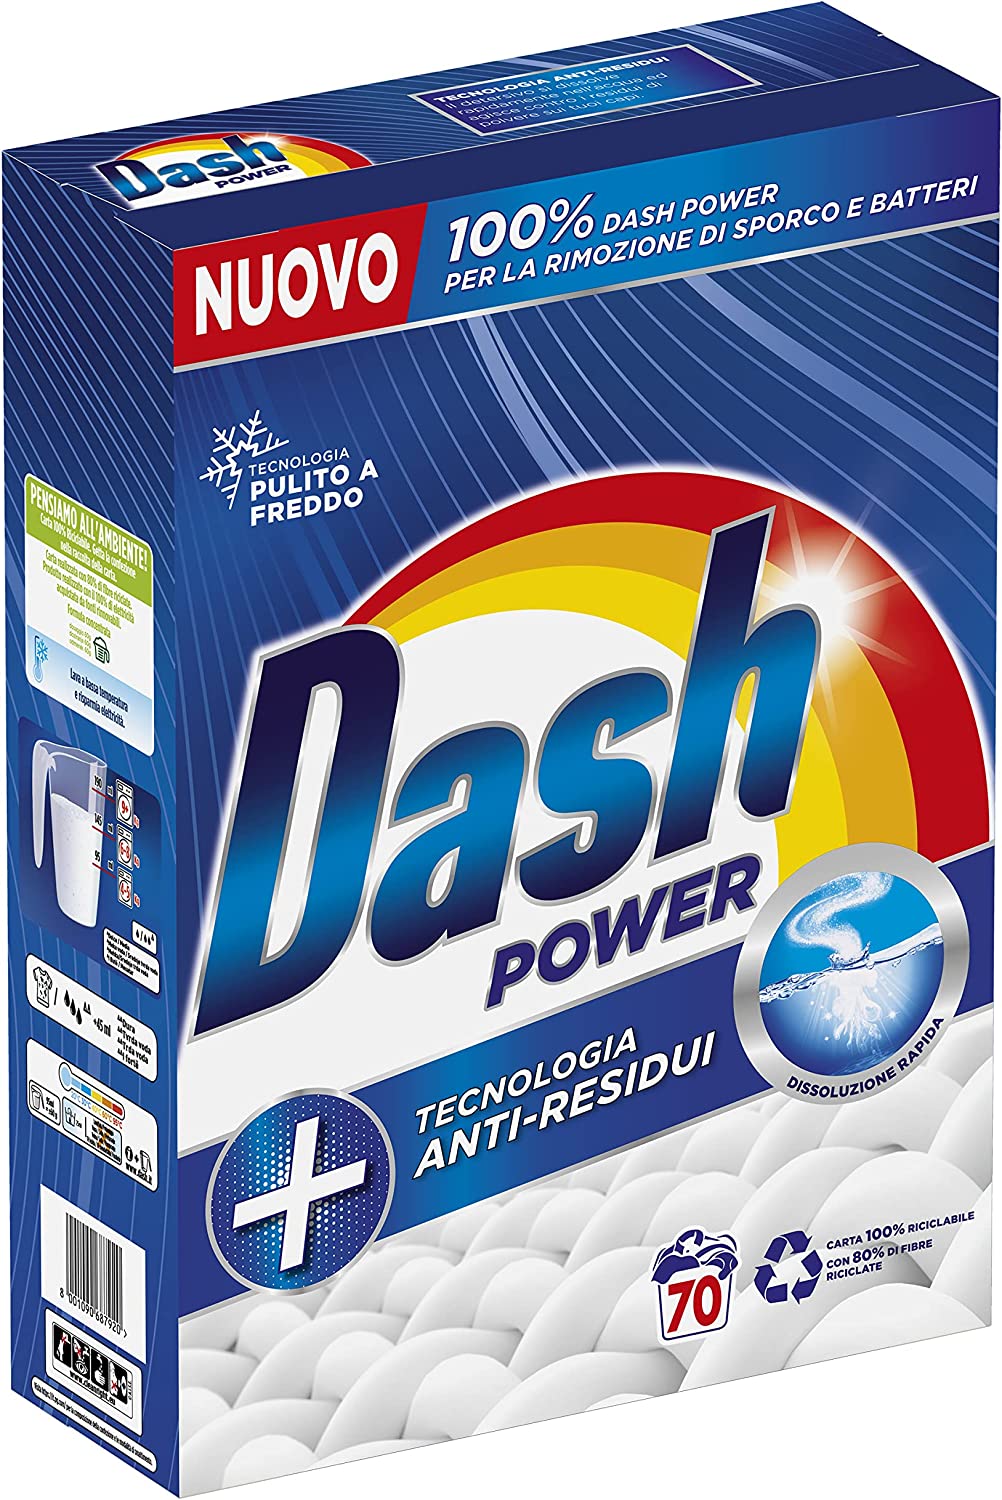 Detersivo bucato mano lavatrice Dash actilift 